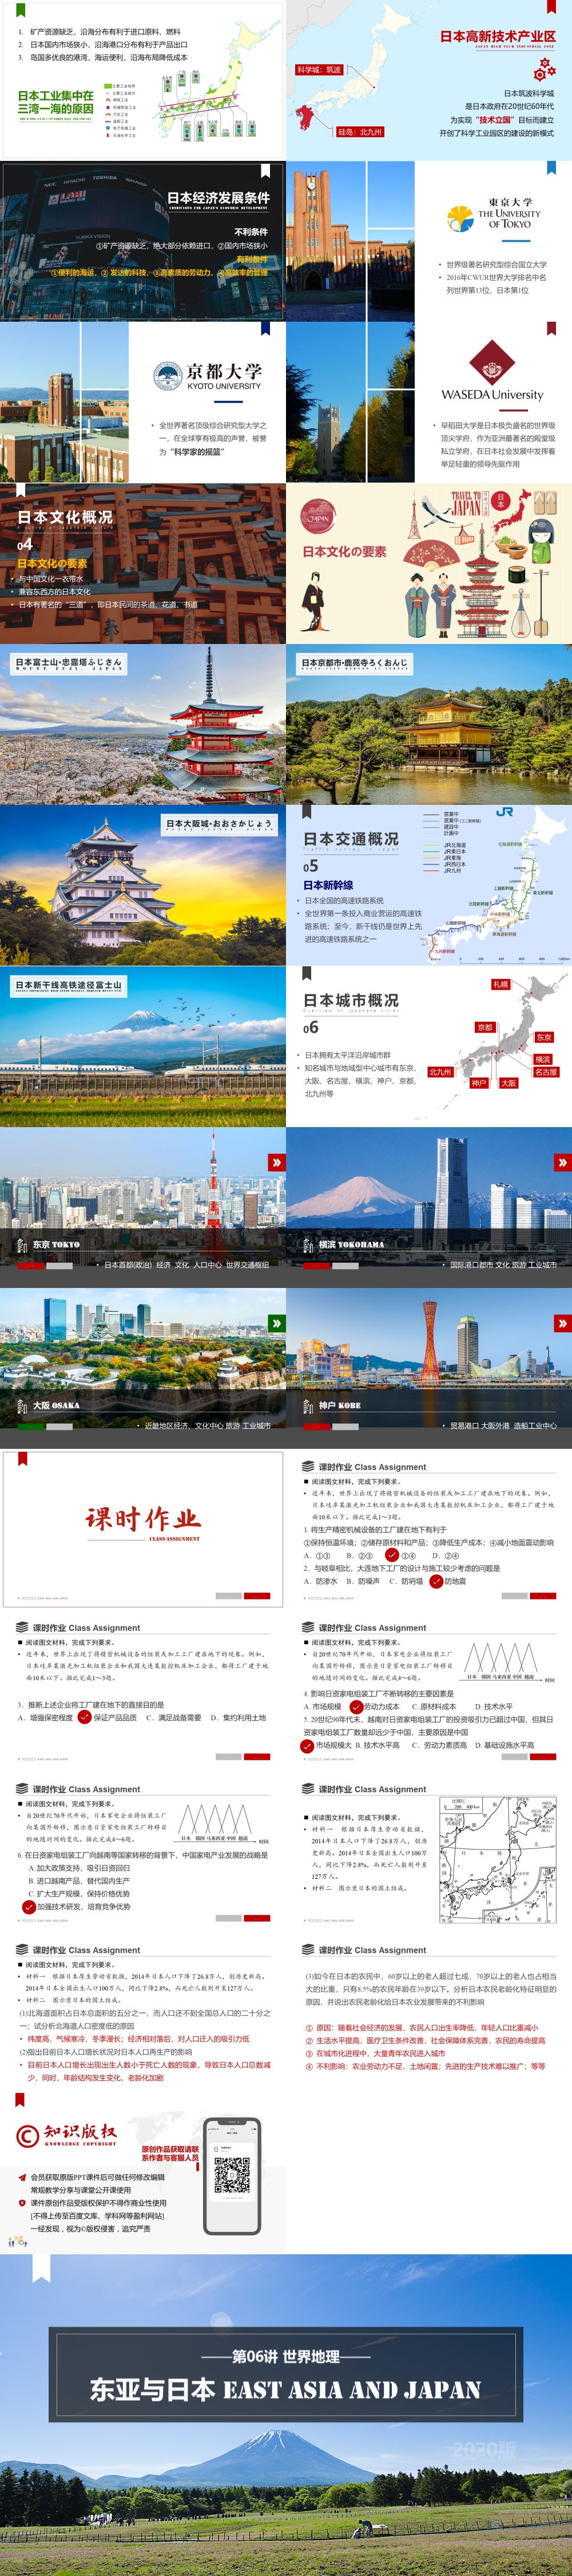 世界地理 第06讲 东亚与日本 East-Asia Japan  [2020版]-1000px-02.jpg